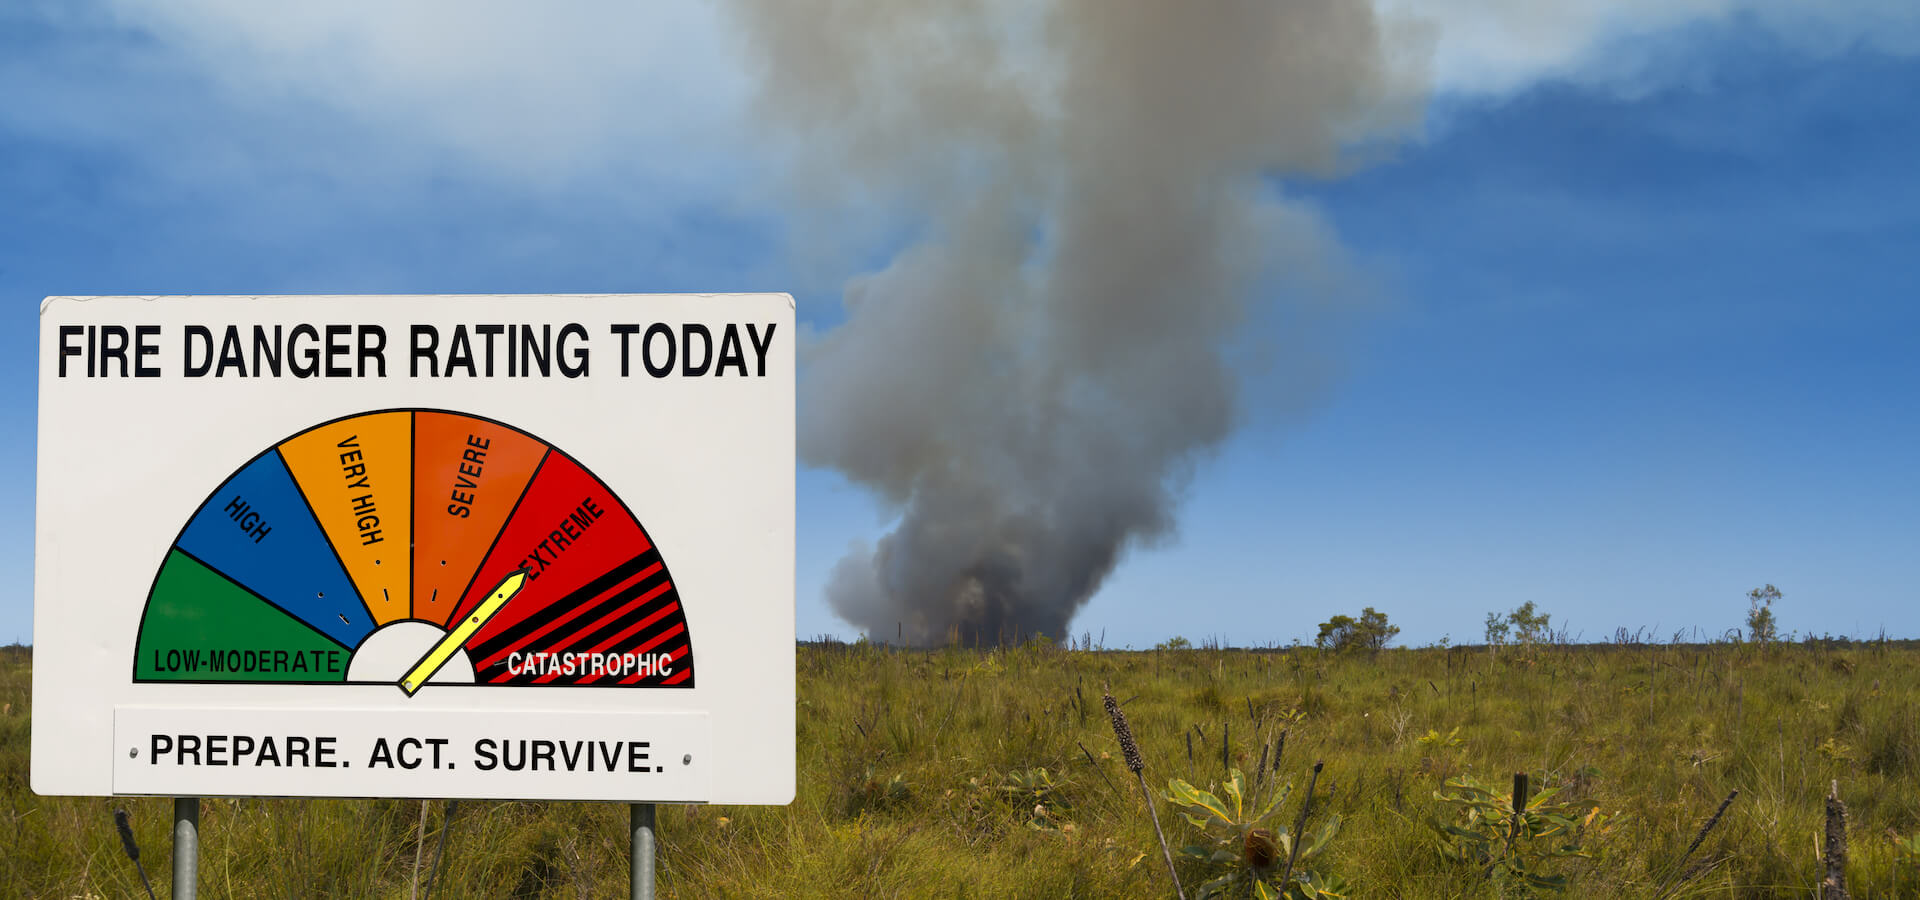 Bushfire alert levels